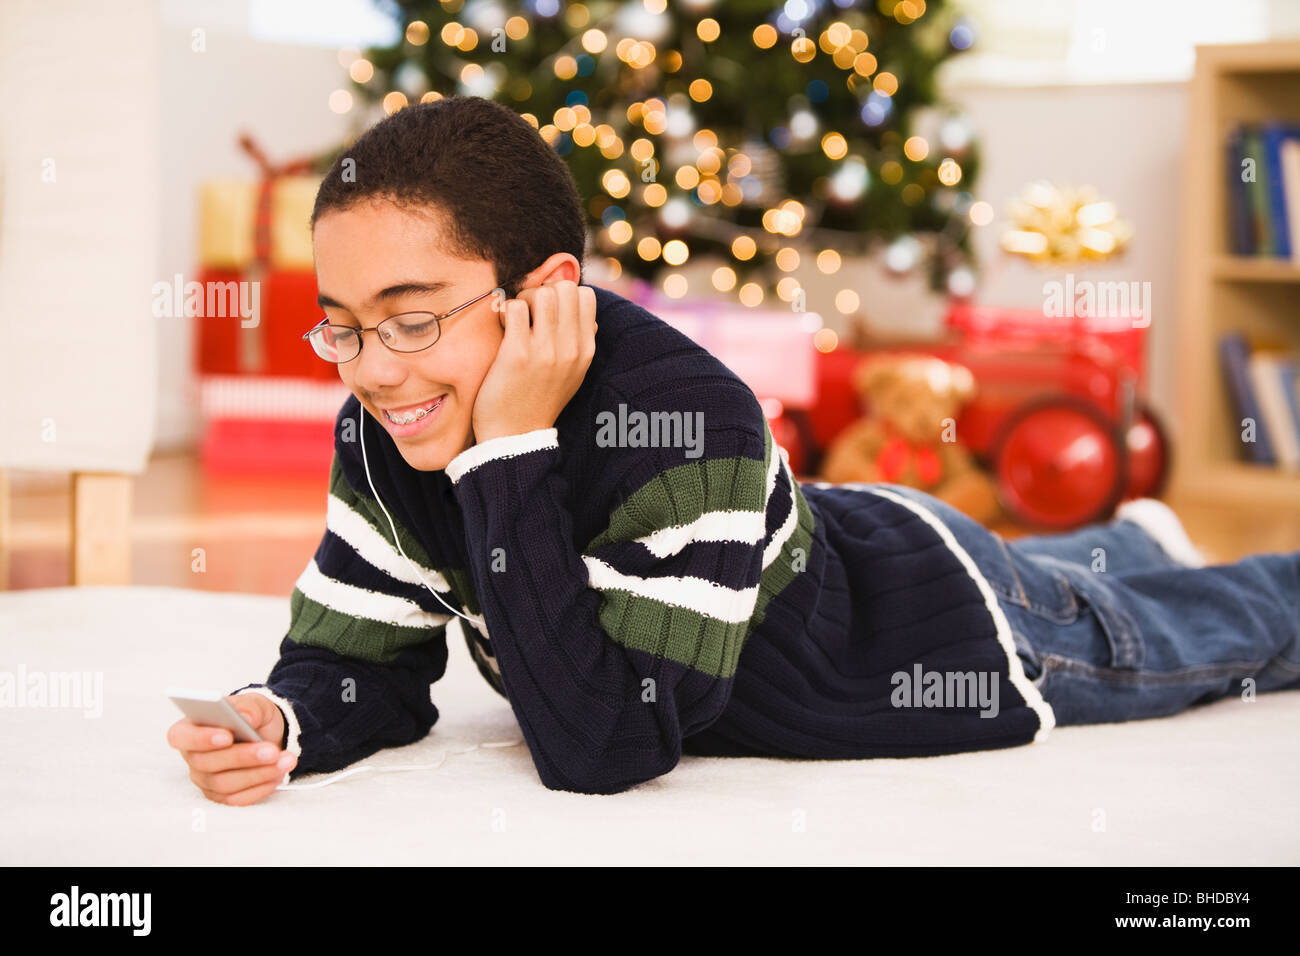 Música De Navidad Fotos e Imágenes de stock - Alamy